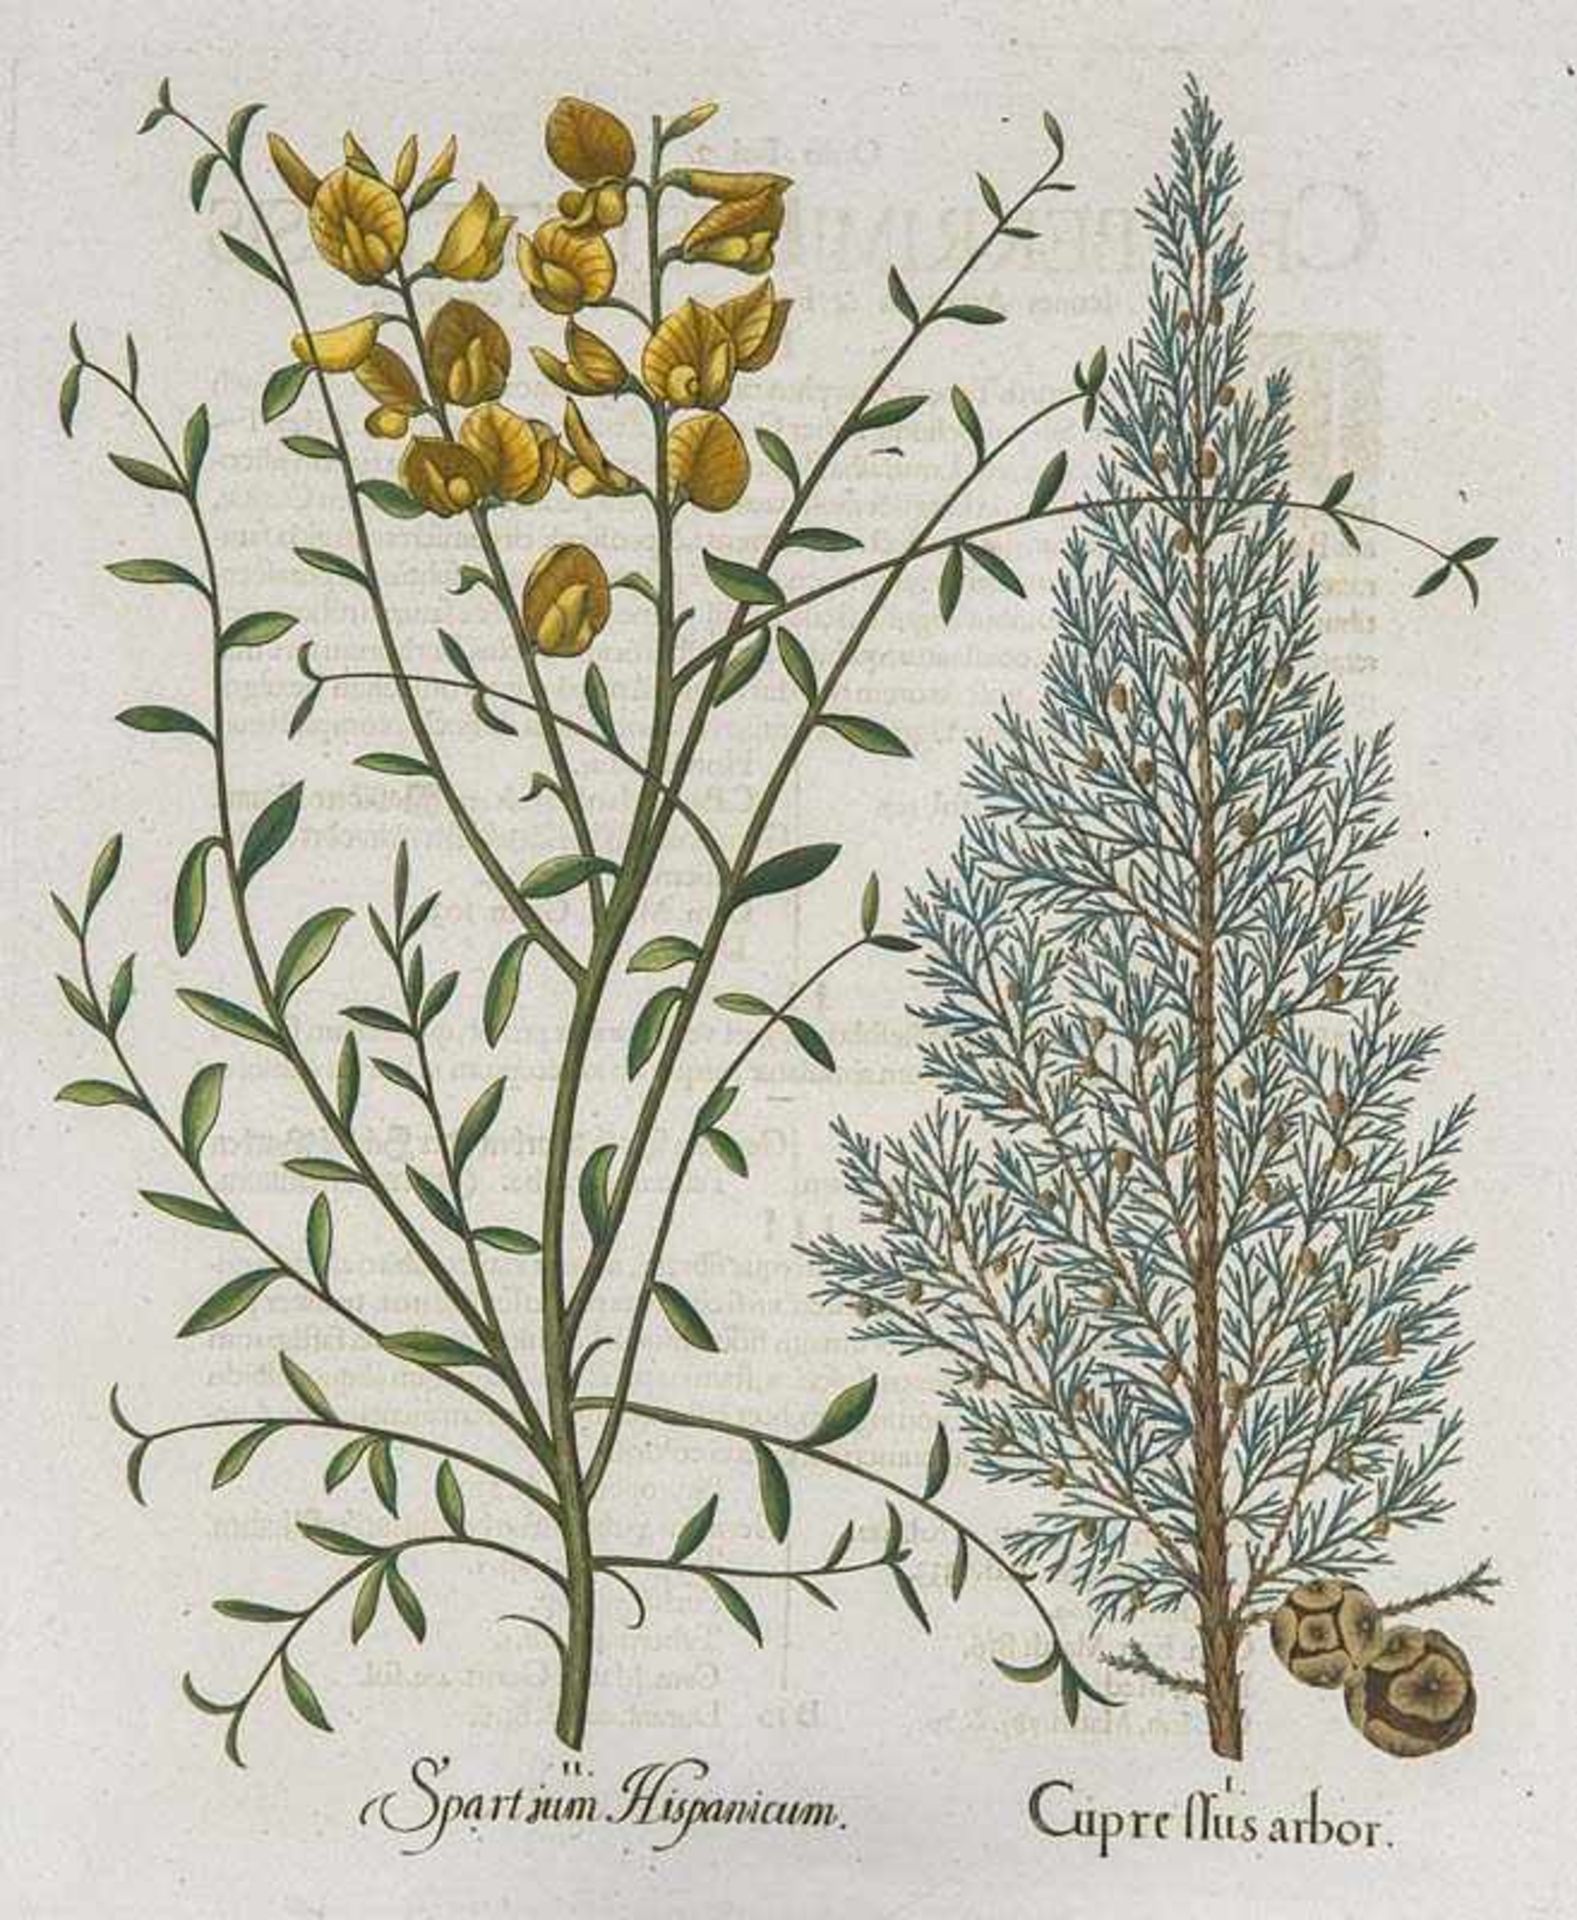 Besler, Basilius. Zypresse. Pfriemenginster. I. Cupre Mus Arbor. II. Spartium Hispanicum.